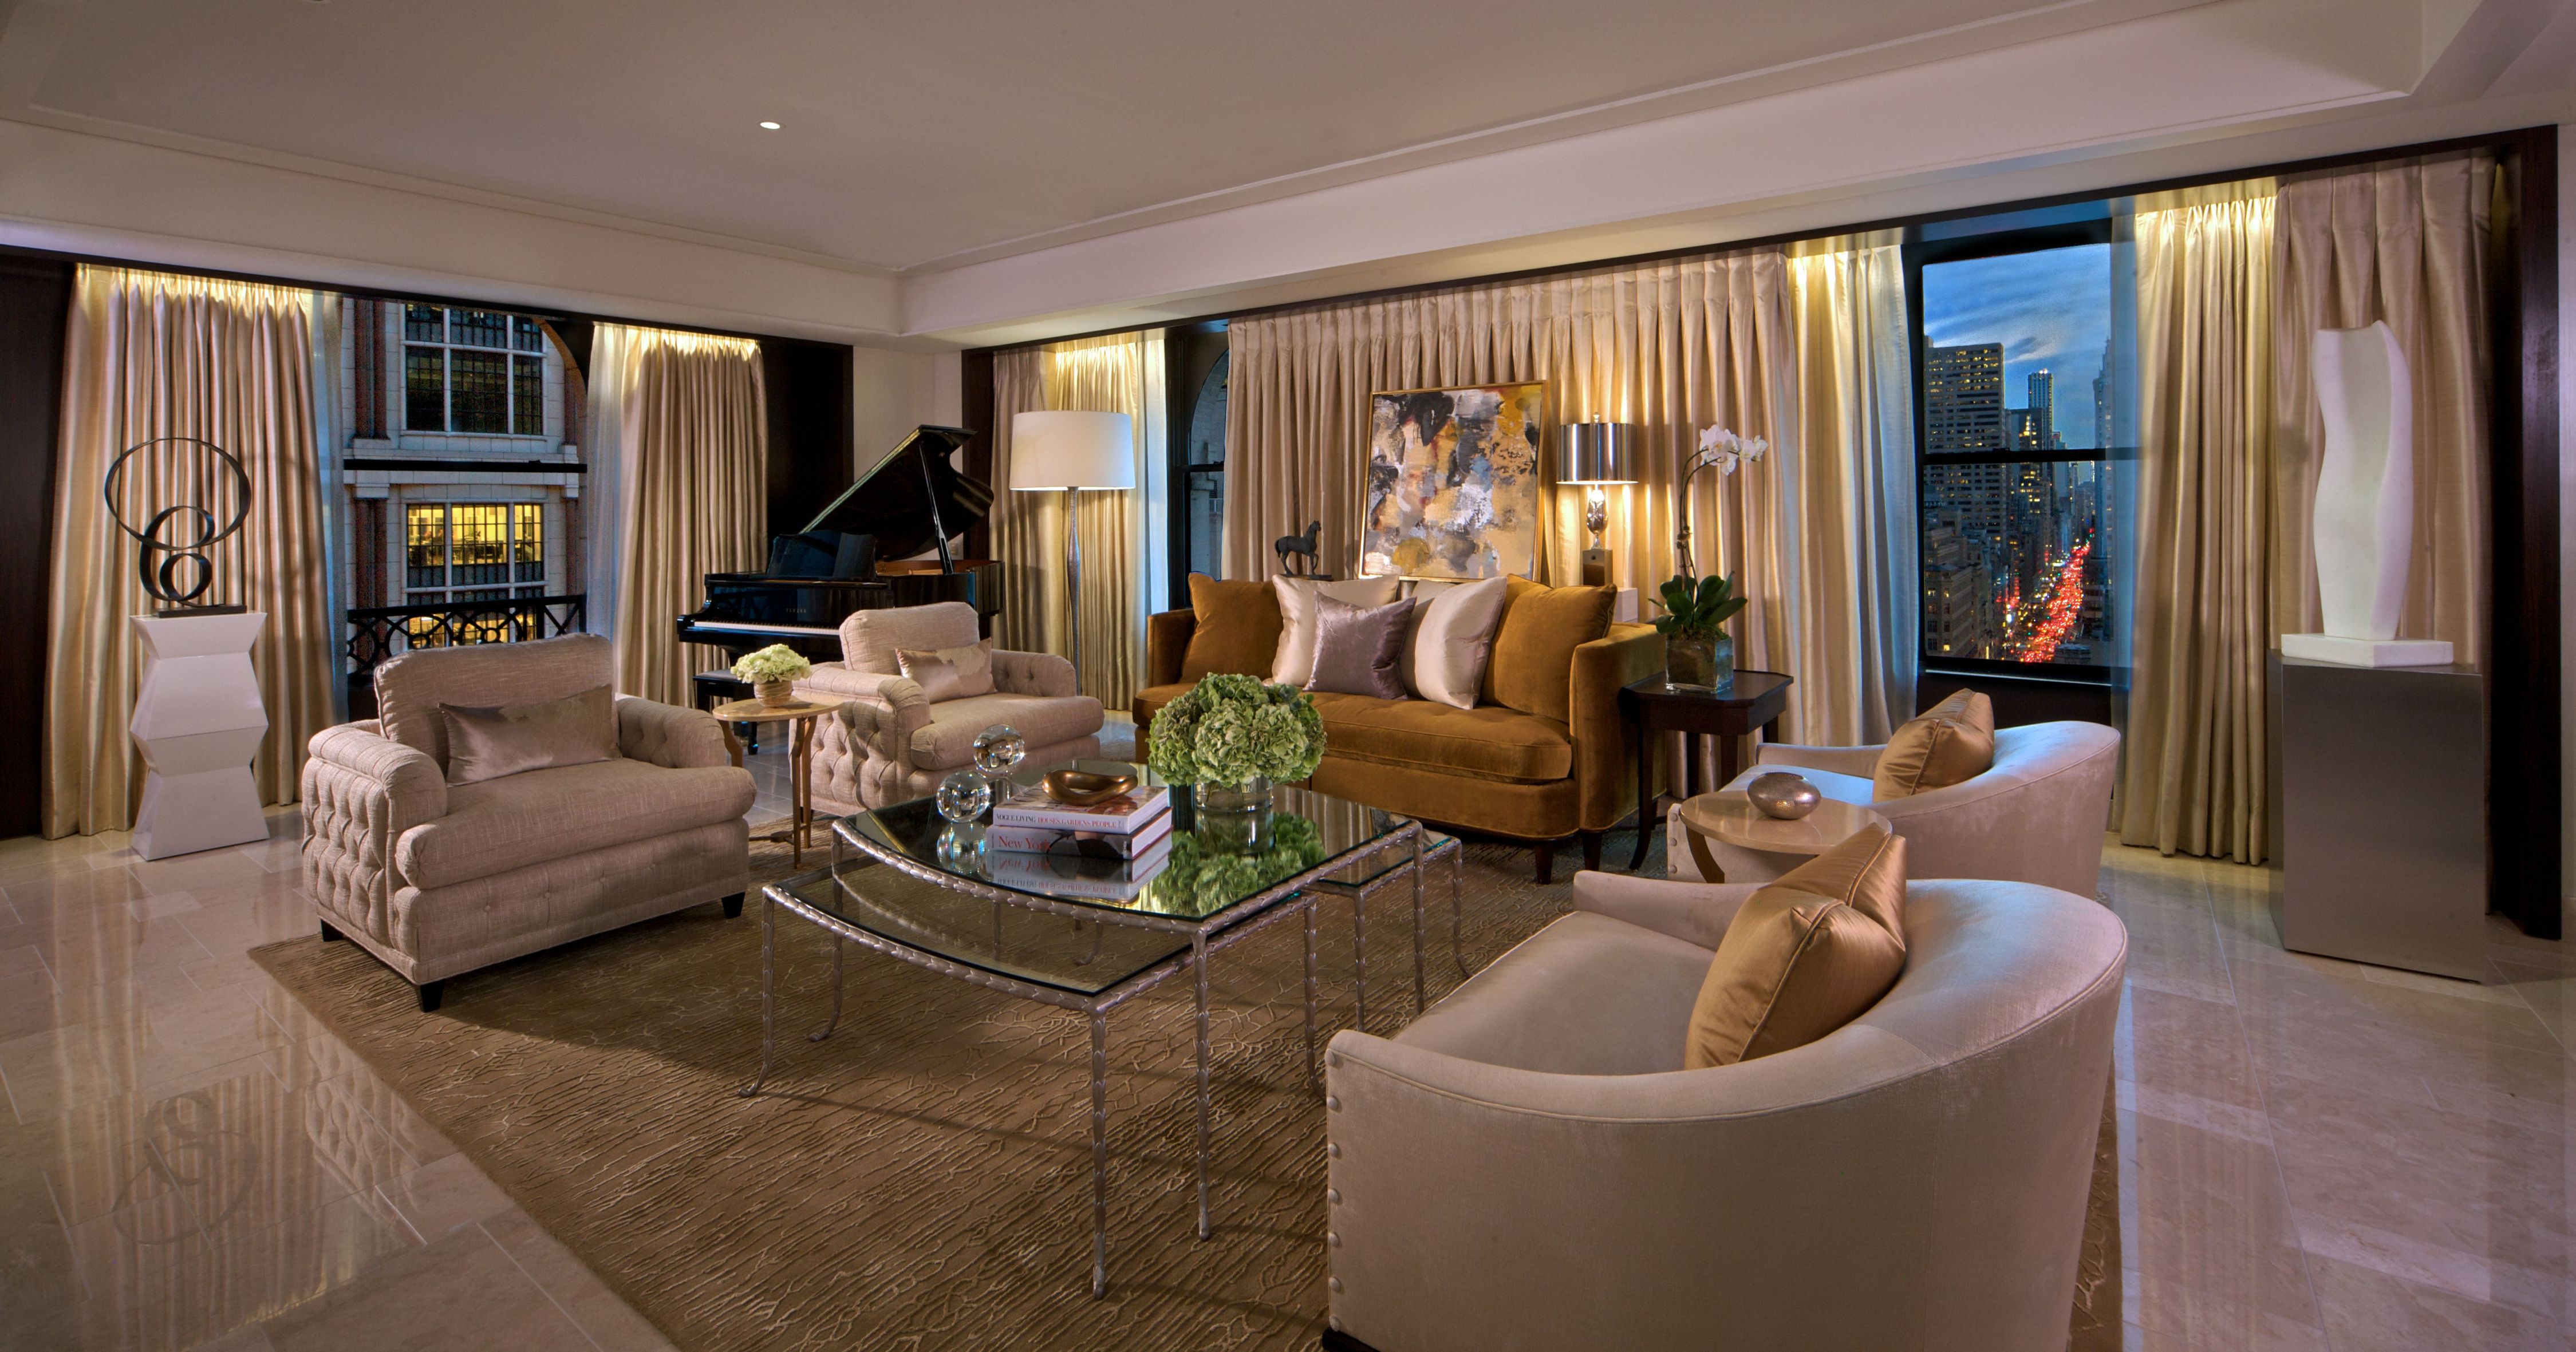 The Peninsula New York: Wohnzimmer in neuer Peninsula Suite - die Übernachtung kostet nur 24.000 US-Dollar